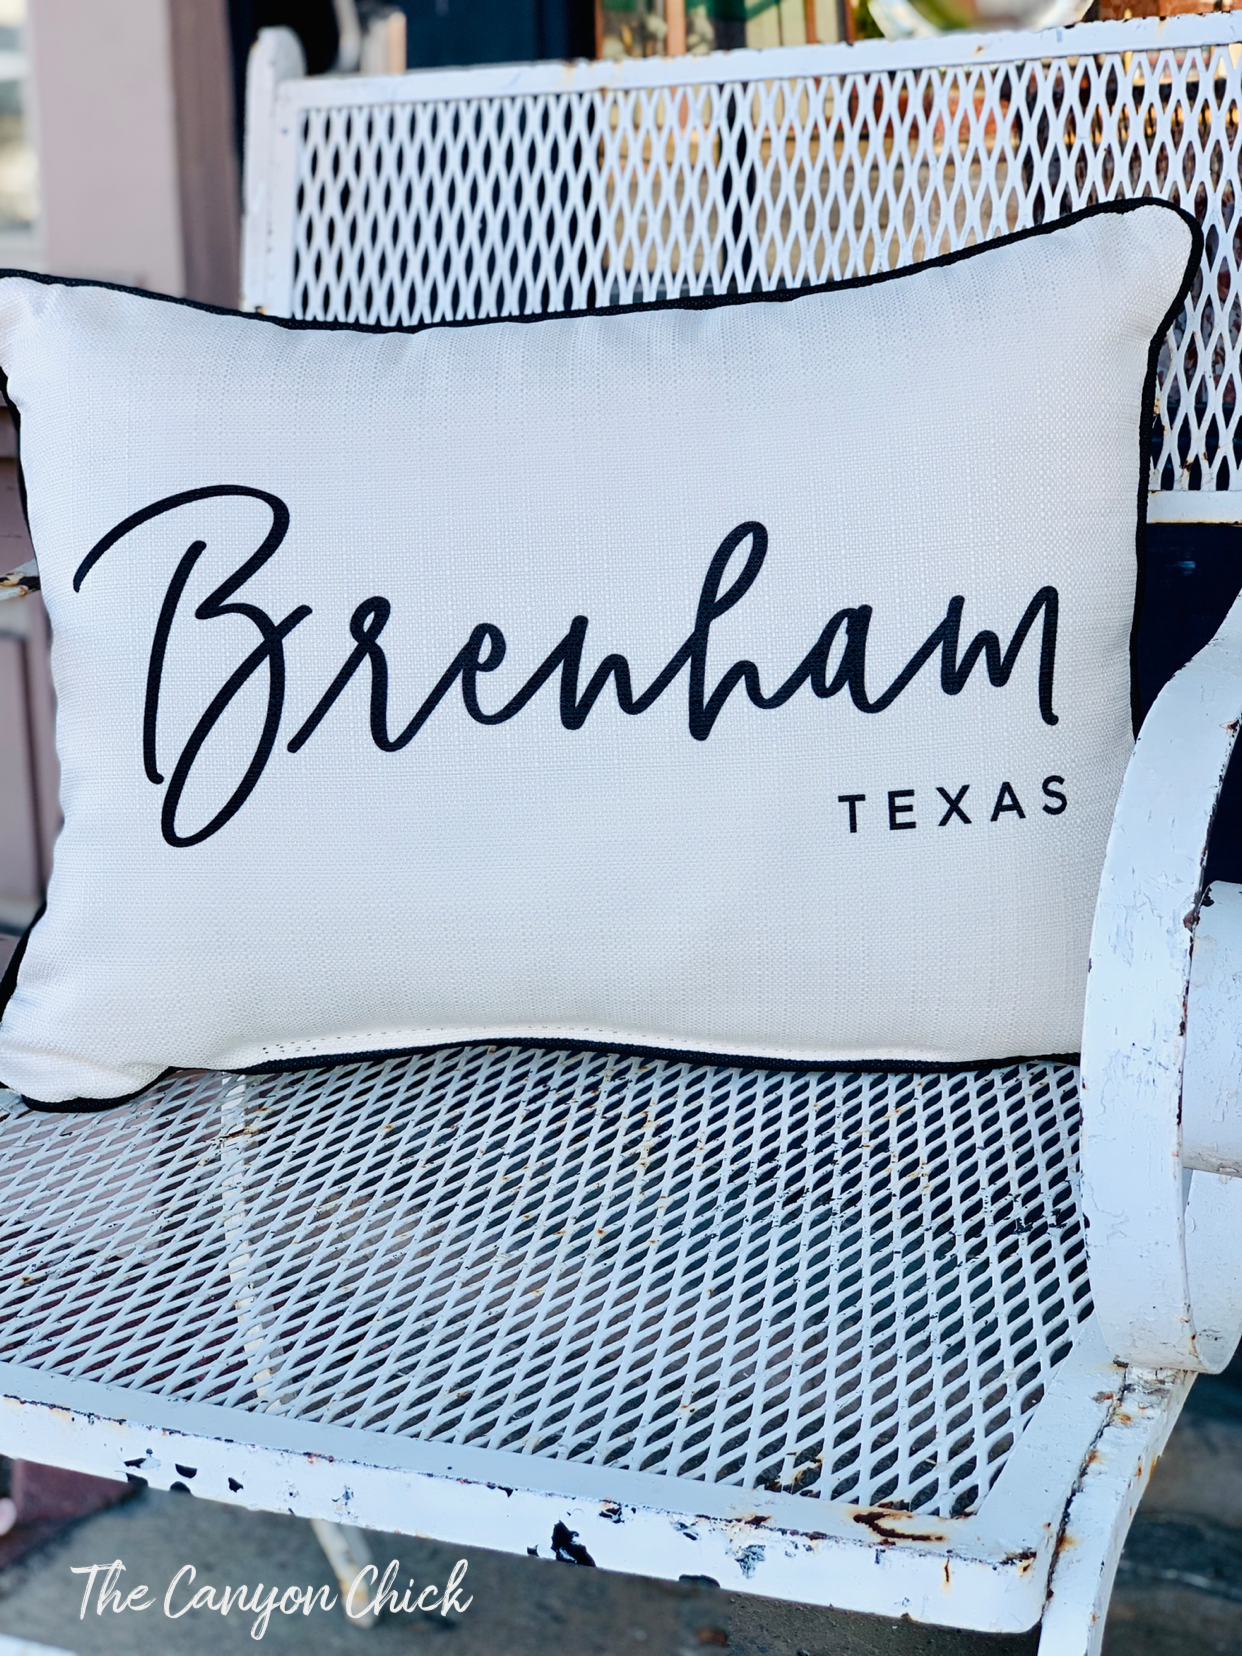 Script Brenham, Texas Pillow